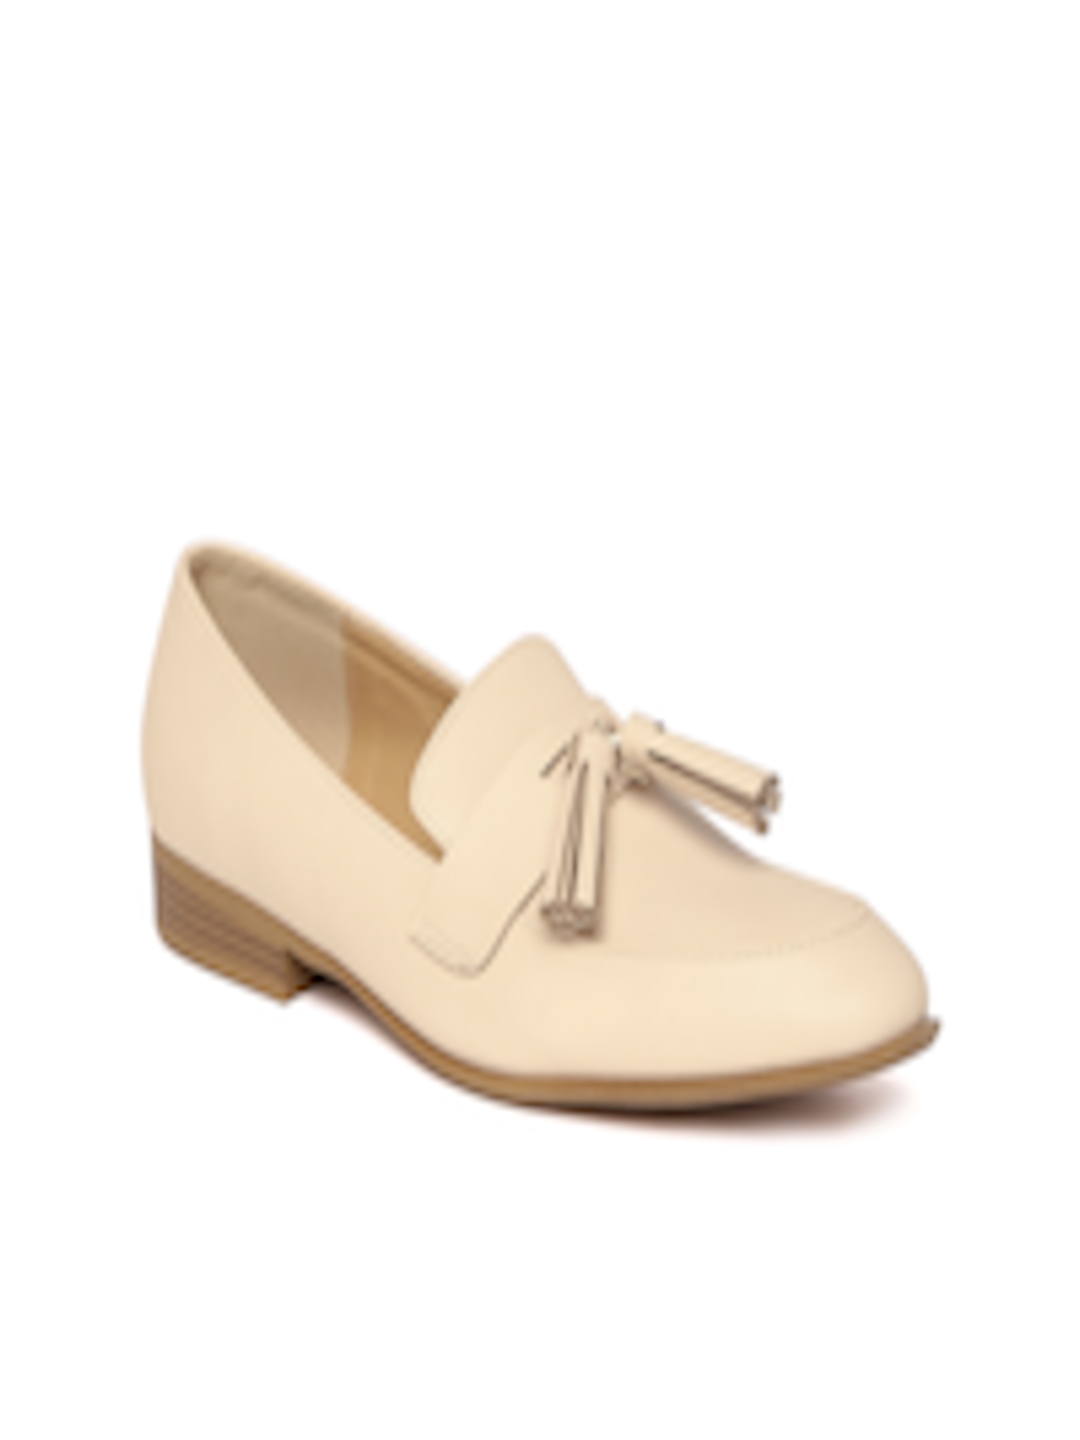 Buy Allen Solly Women Beige Loafers - Casual Shoes for Women 2154464 ...